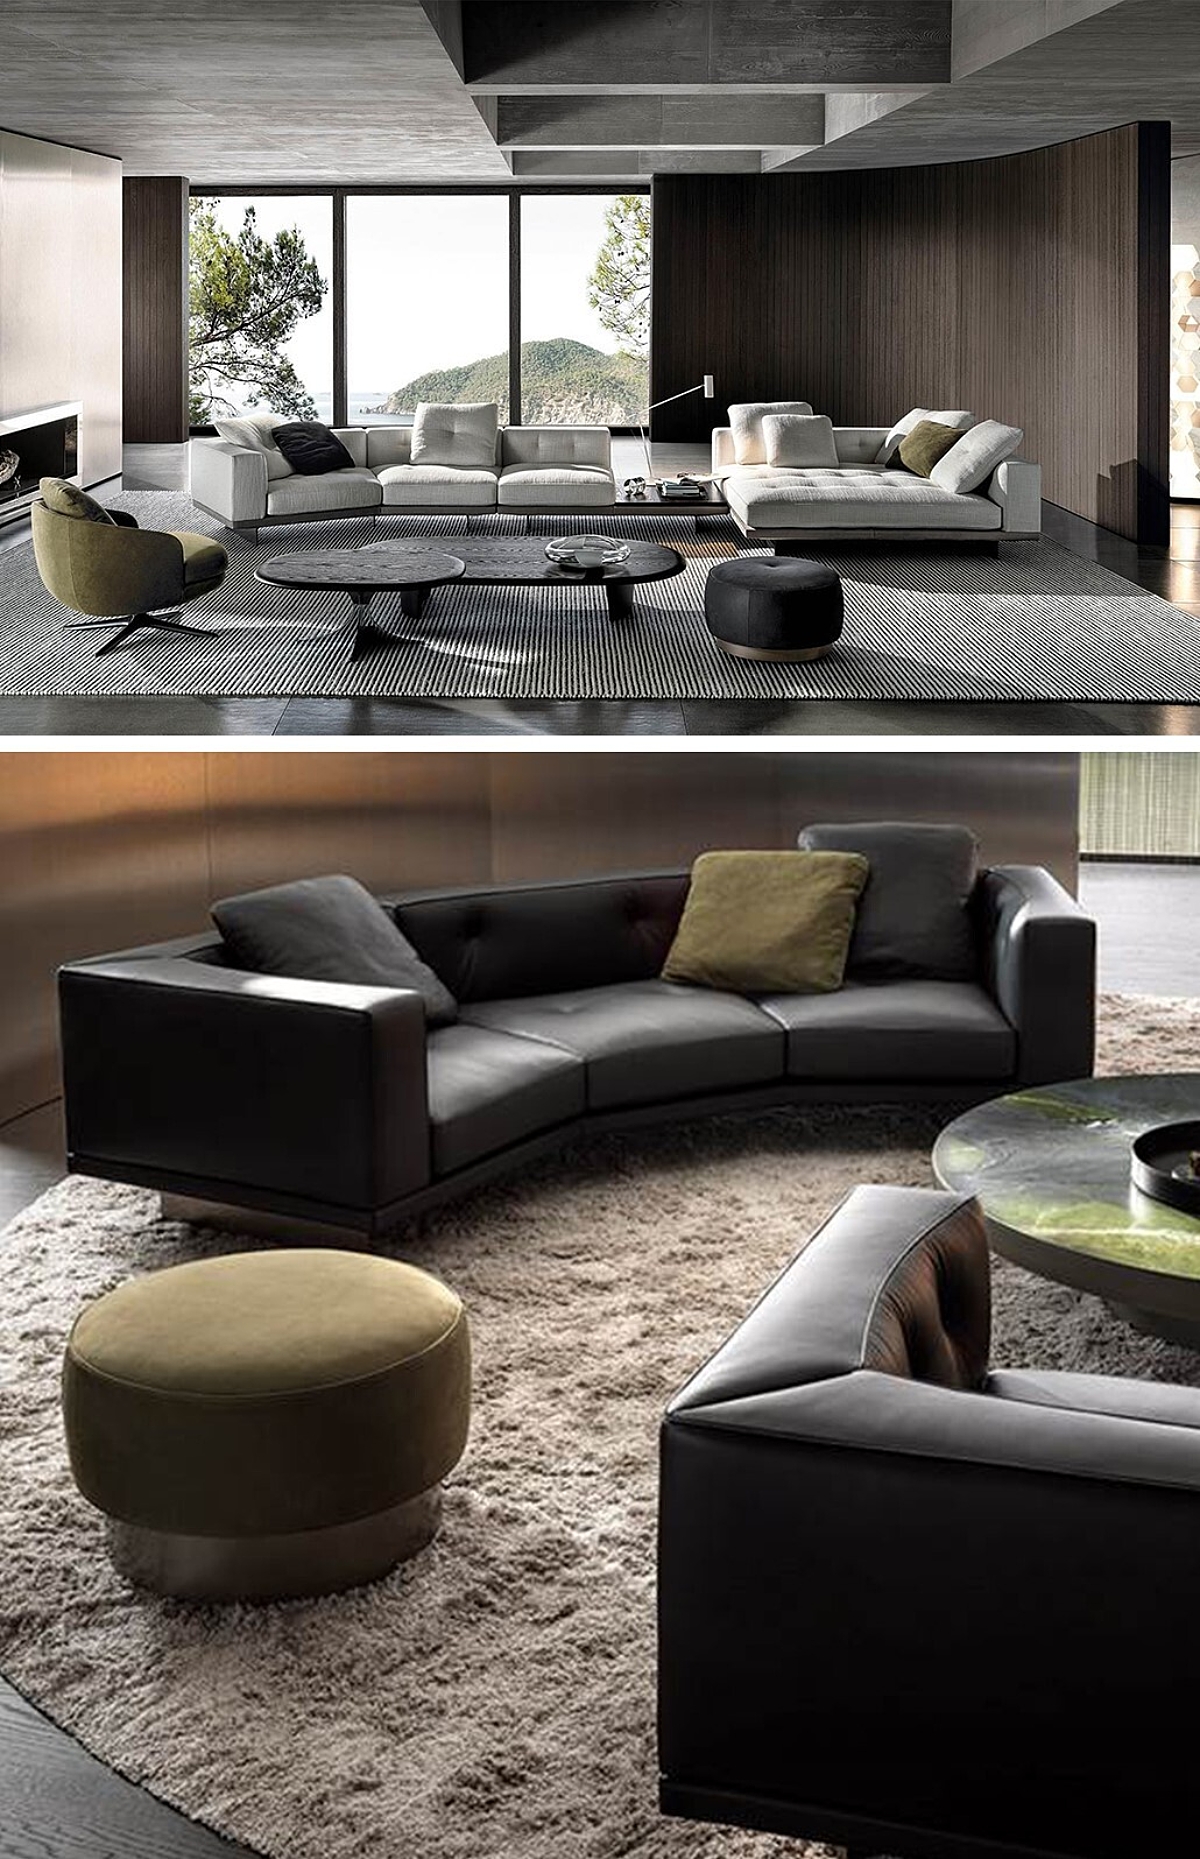 Ontdek de nieuwe collectie sofa's van Minotti bij Classo